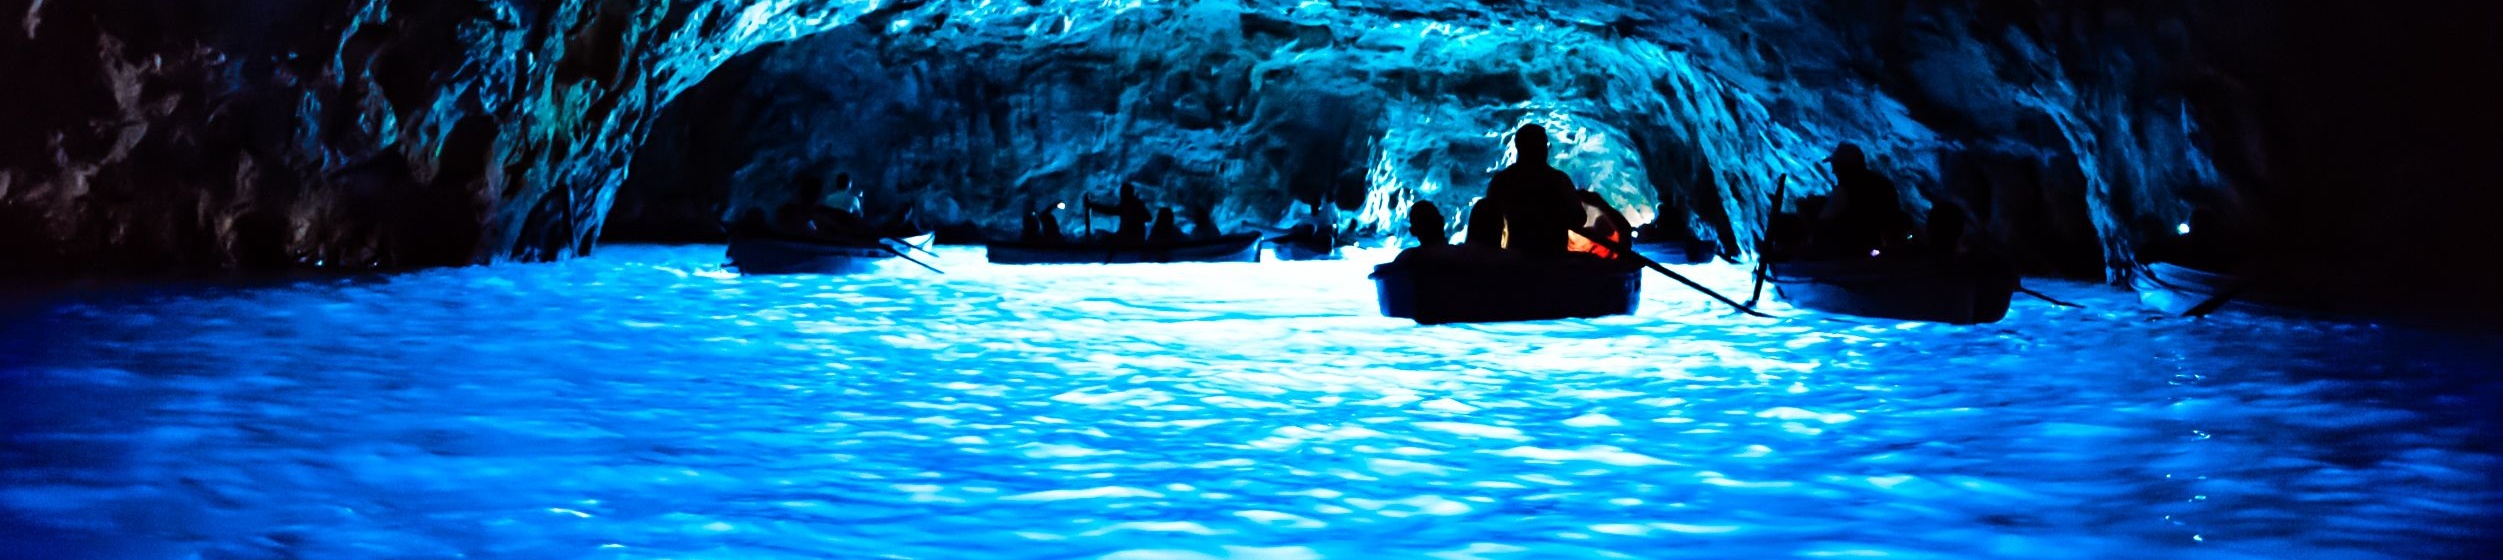 Grotta Azzurra, Capri: tutto quello che devi sapere